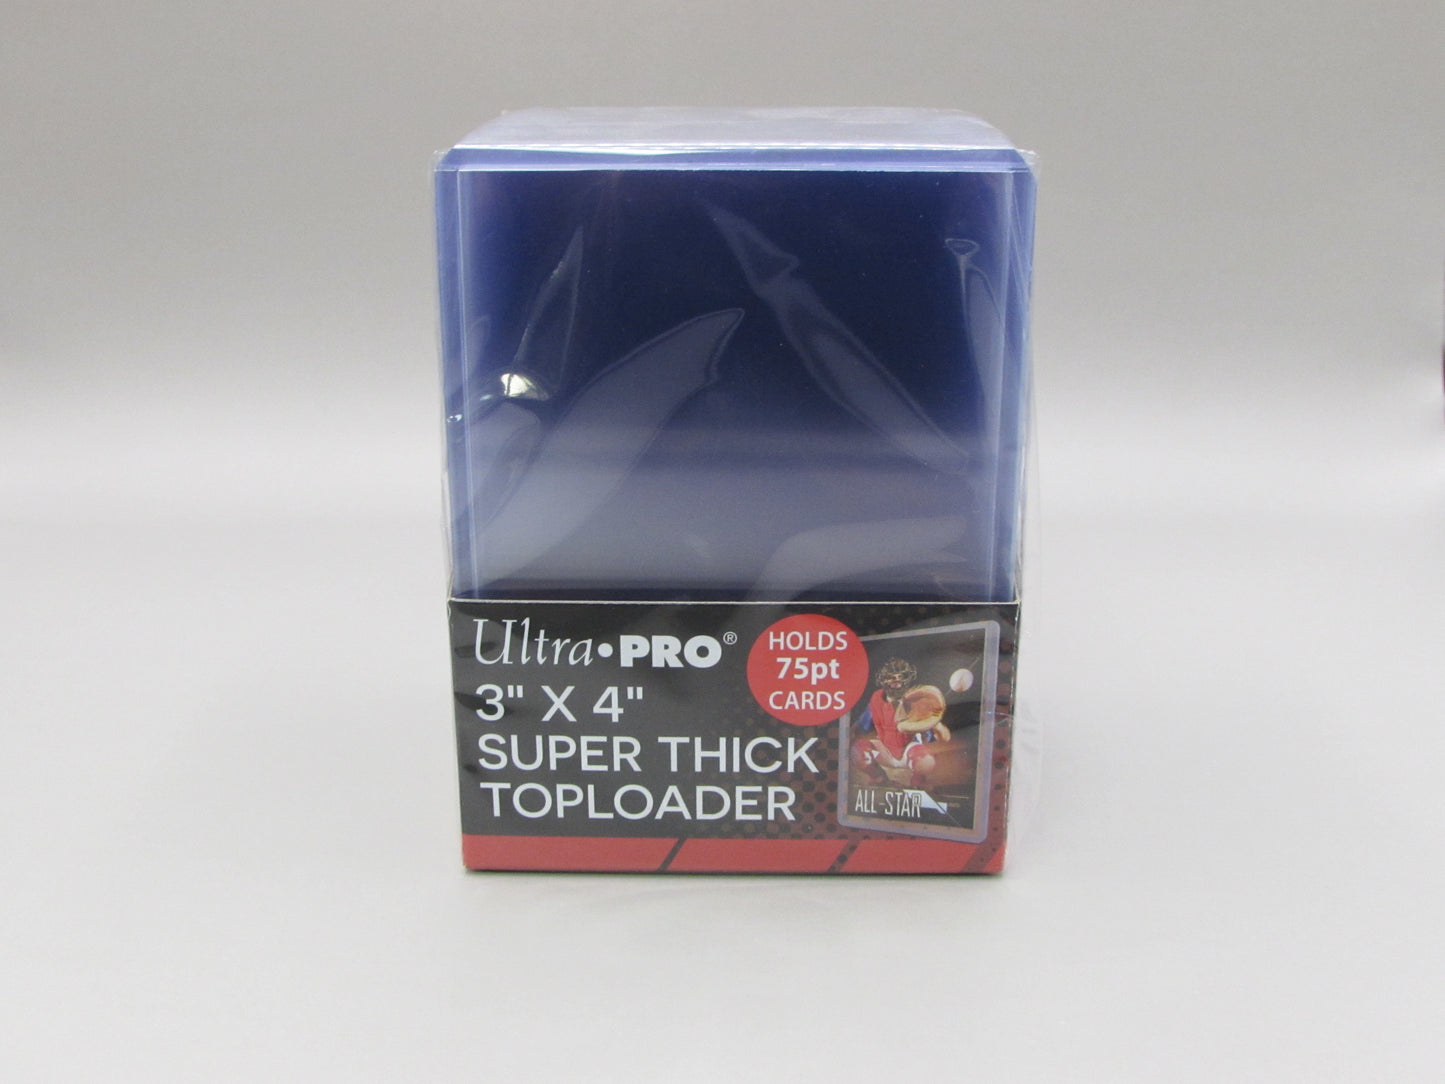 Ultra pro 75pt toploader